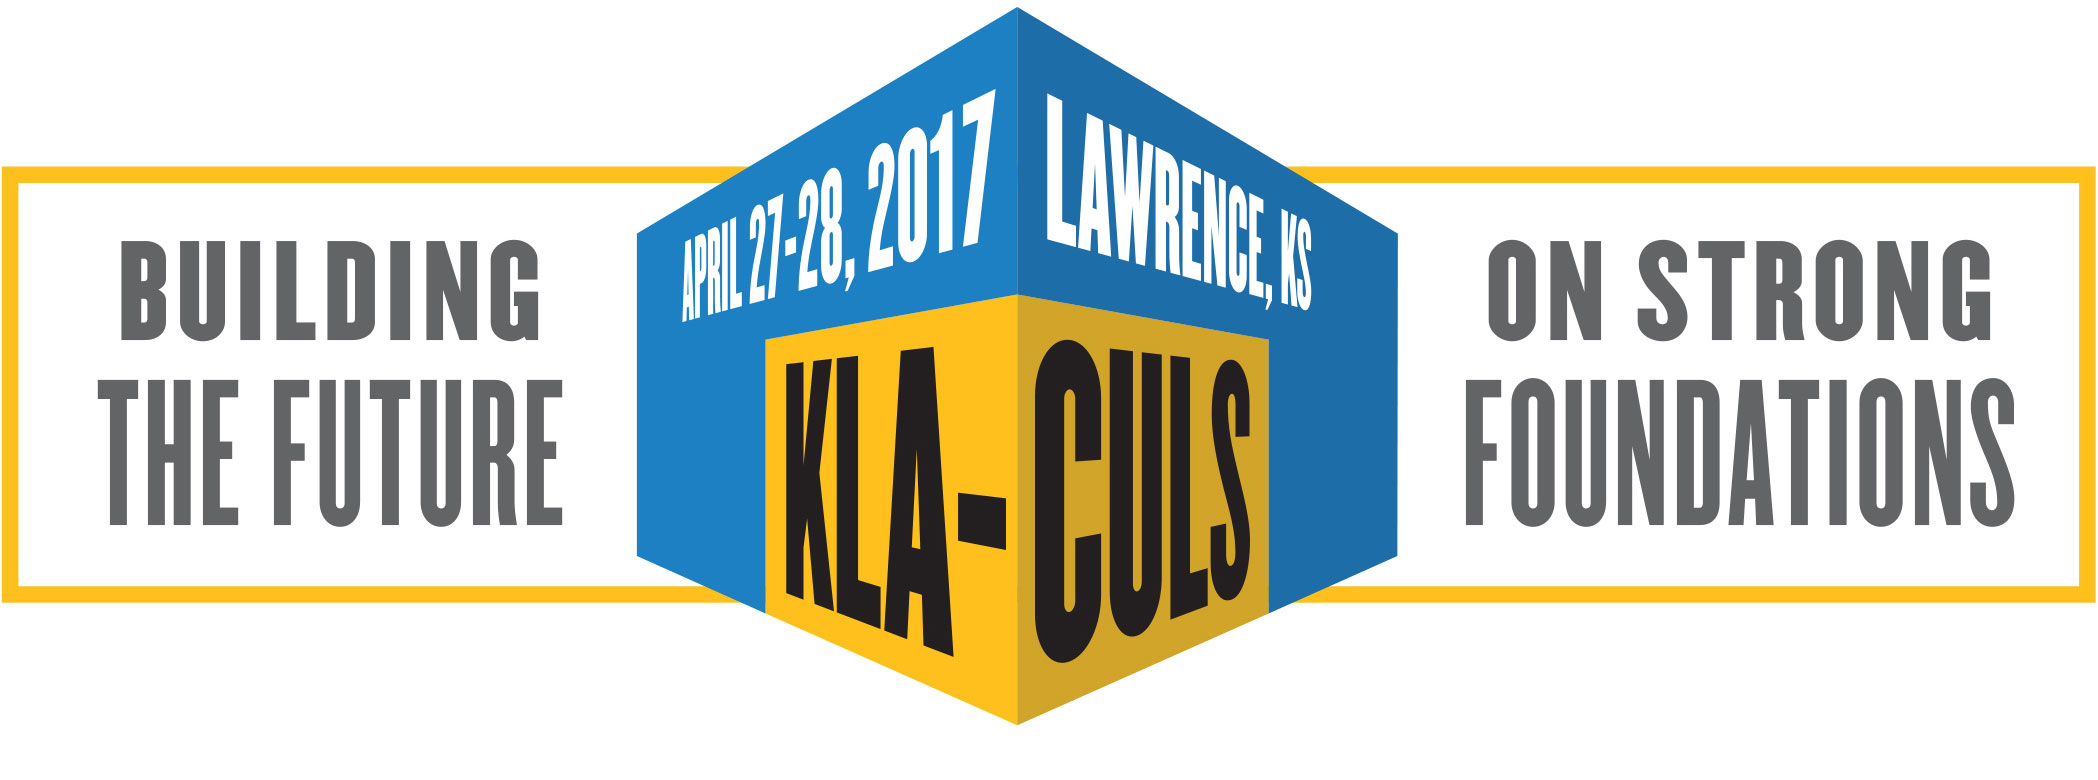 KLA-CULS Conference logo